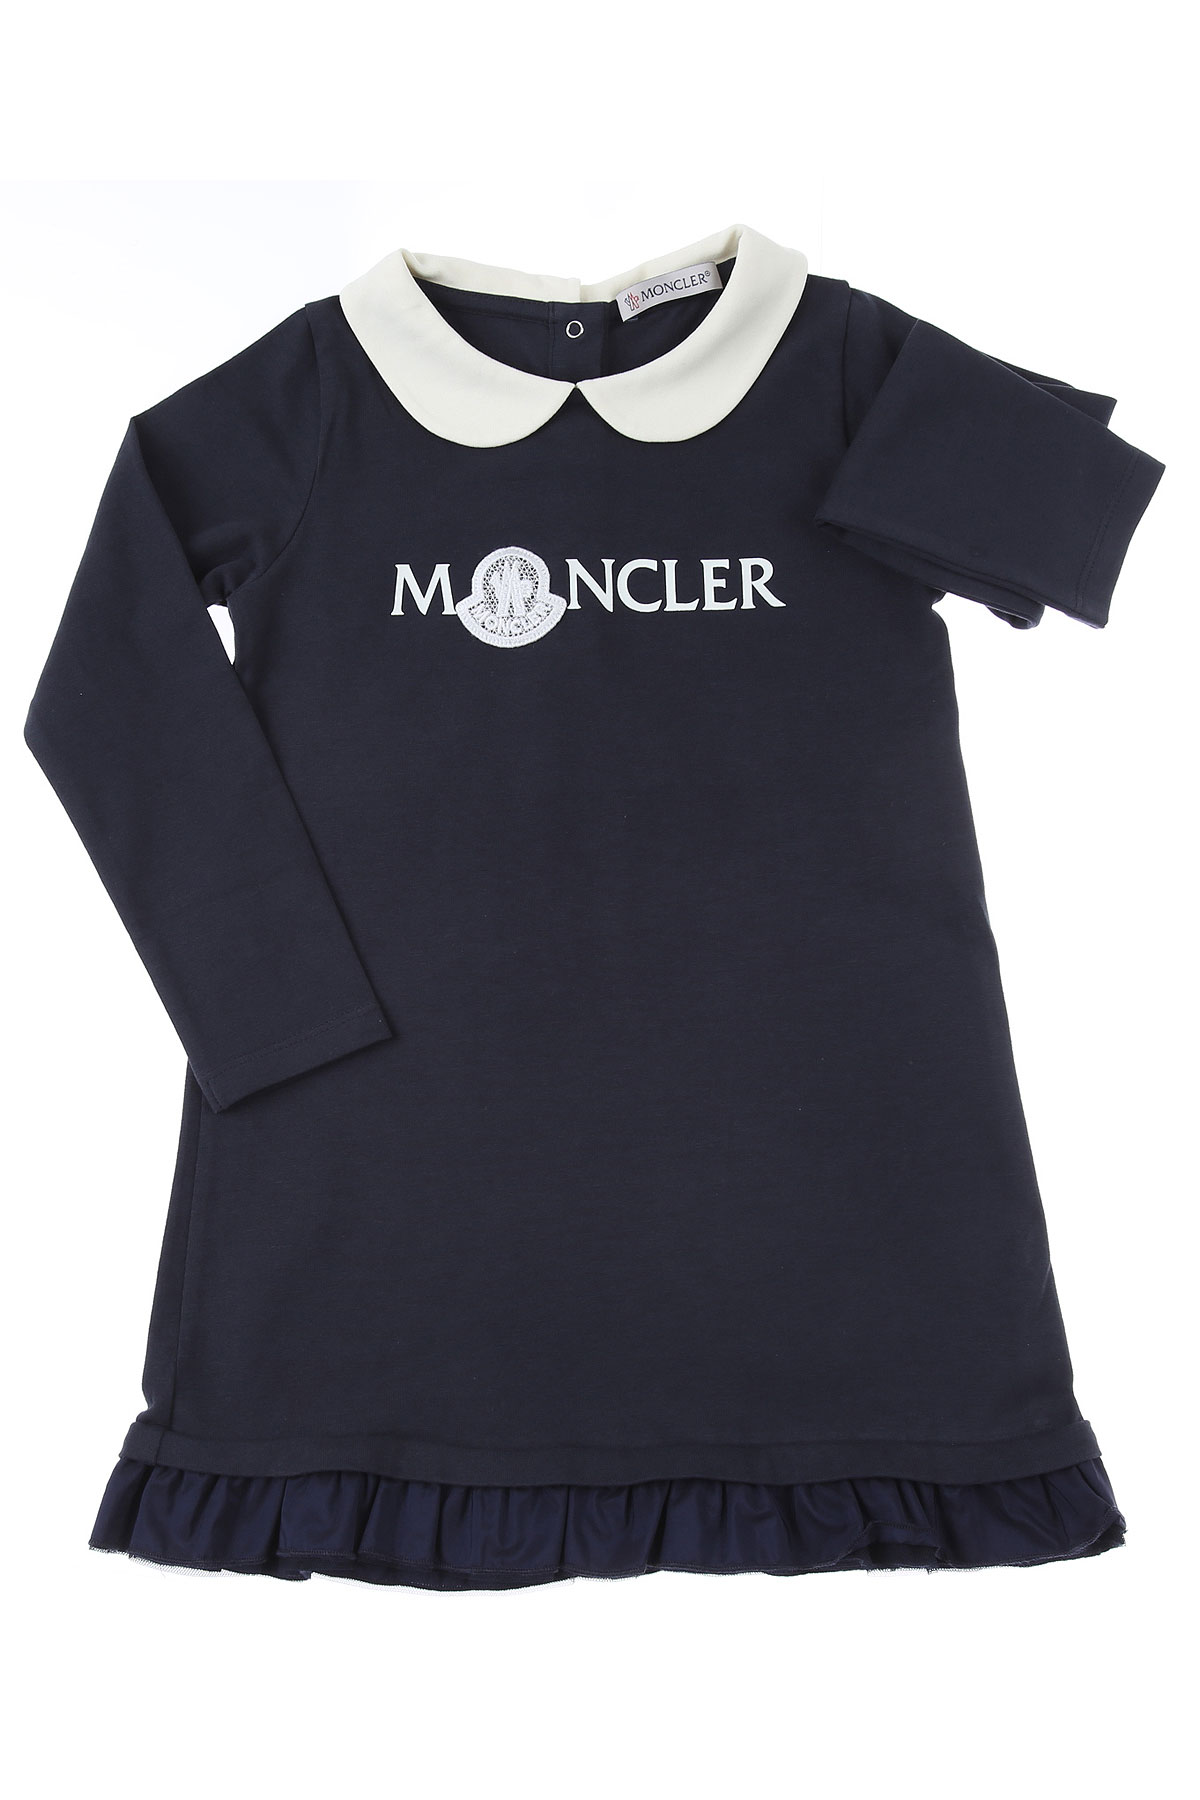 Moncler Baby Kleid für Mädchen Günstig im Sale, Blau, Baumwolle, 2017, 2Y 3Y